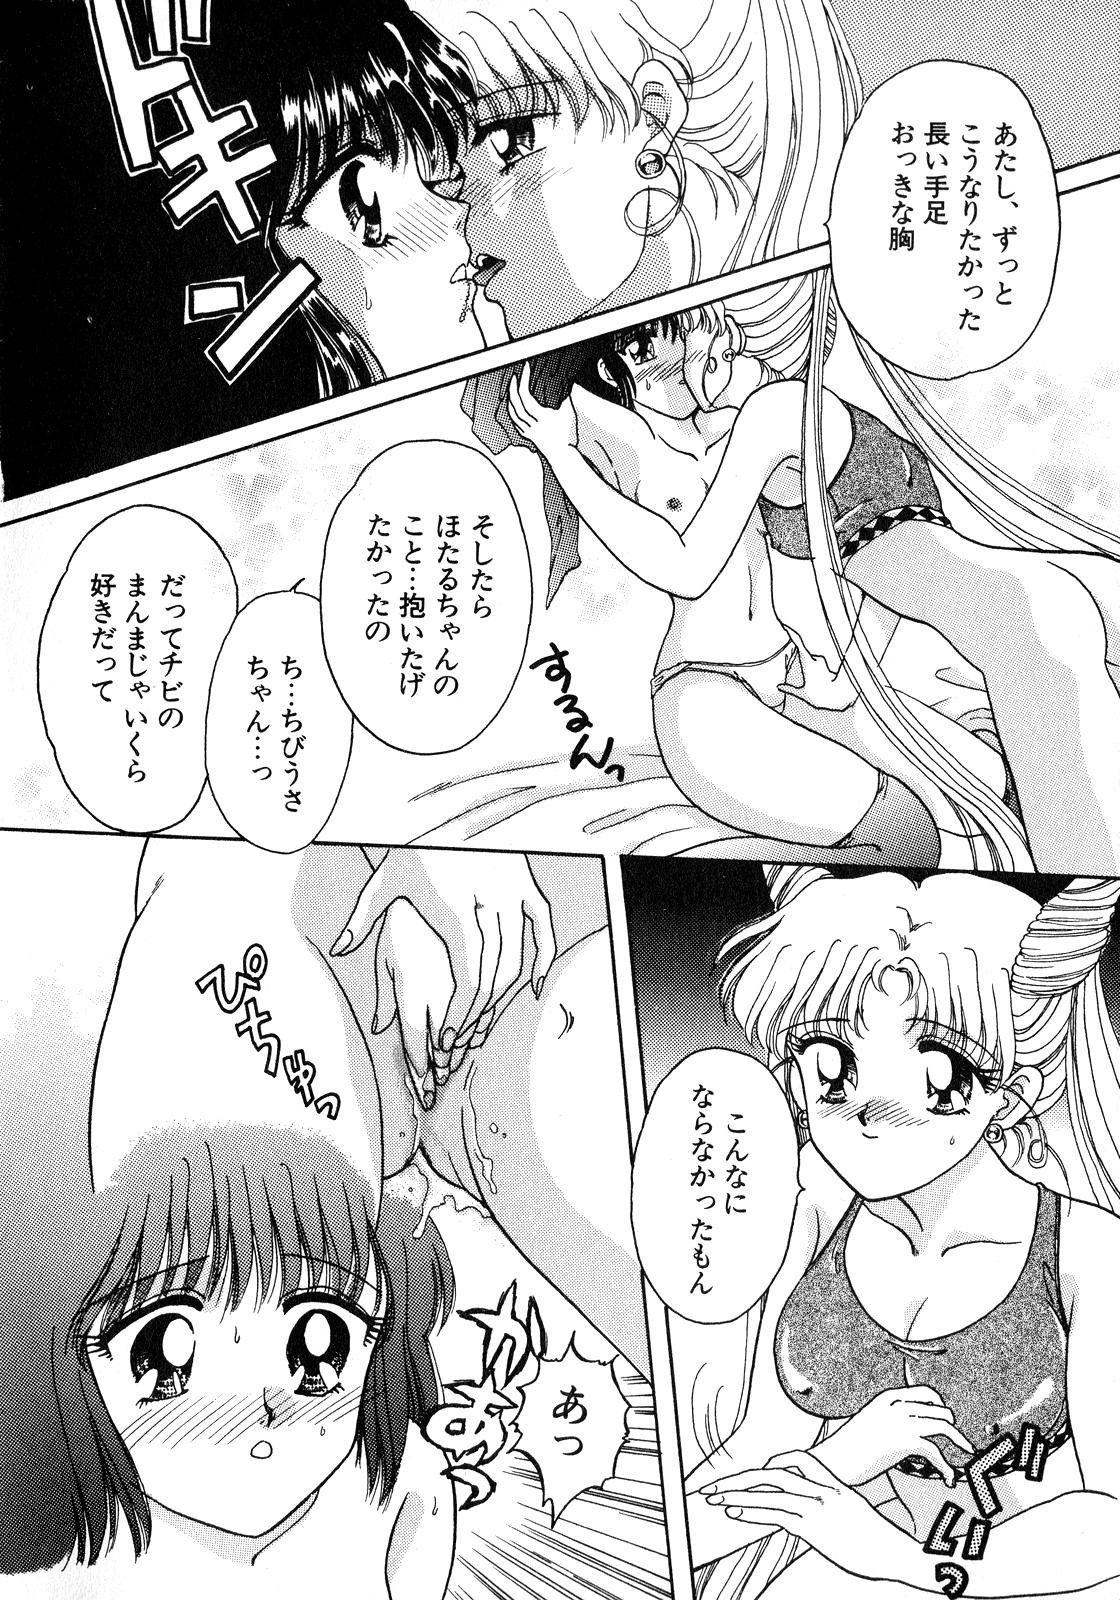 Blow Job Lunatic Party 8 - Sailor moon Cam Porn - Page 13